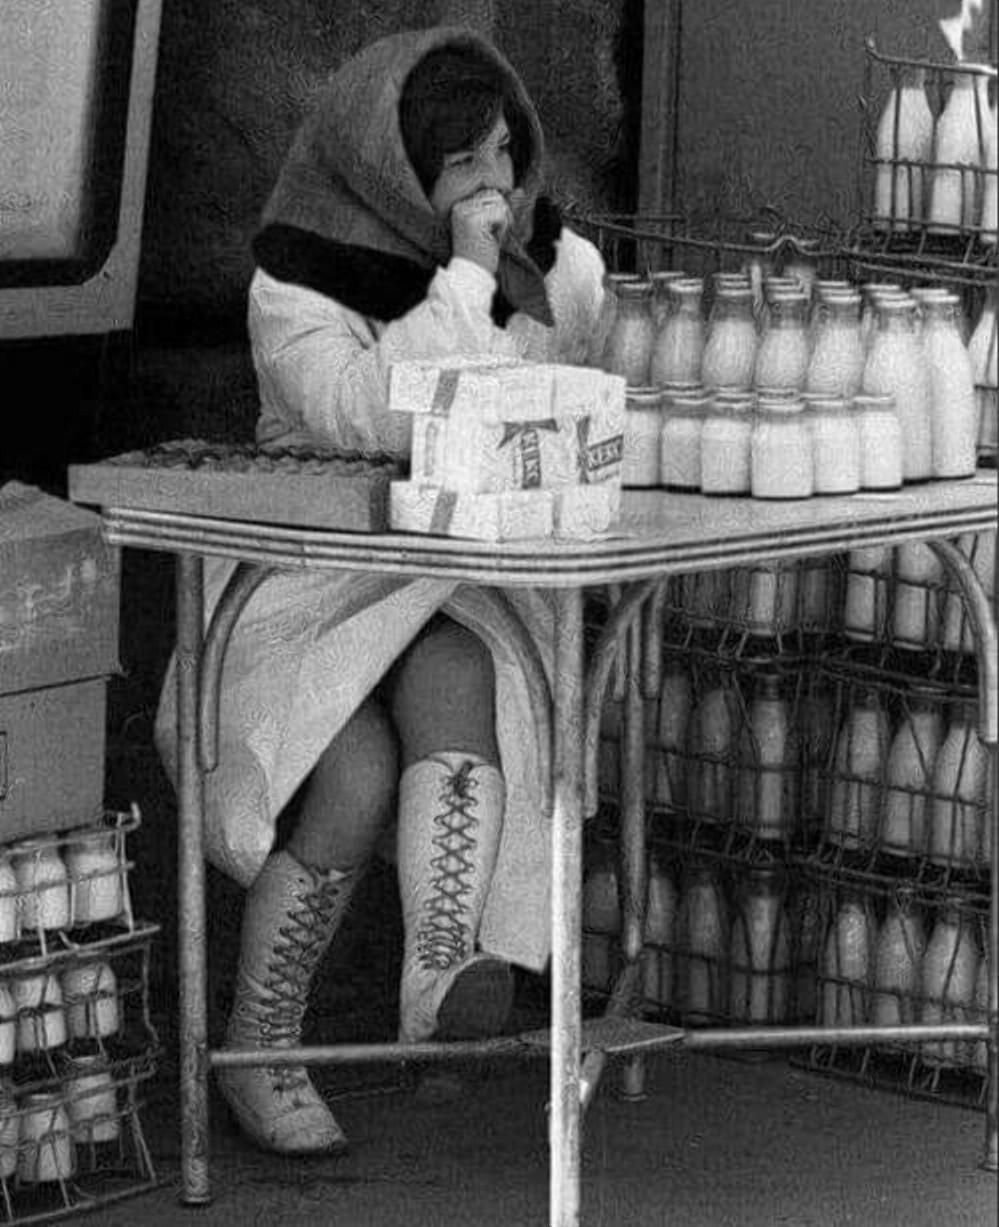 Продавщица молочной продукции. Фото датировано 1970 годы.